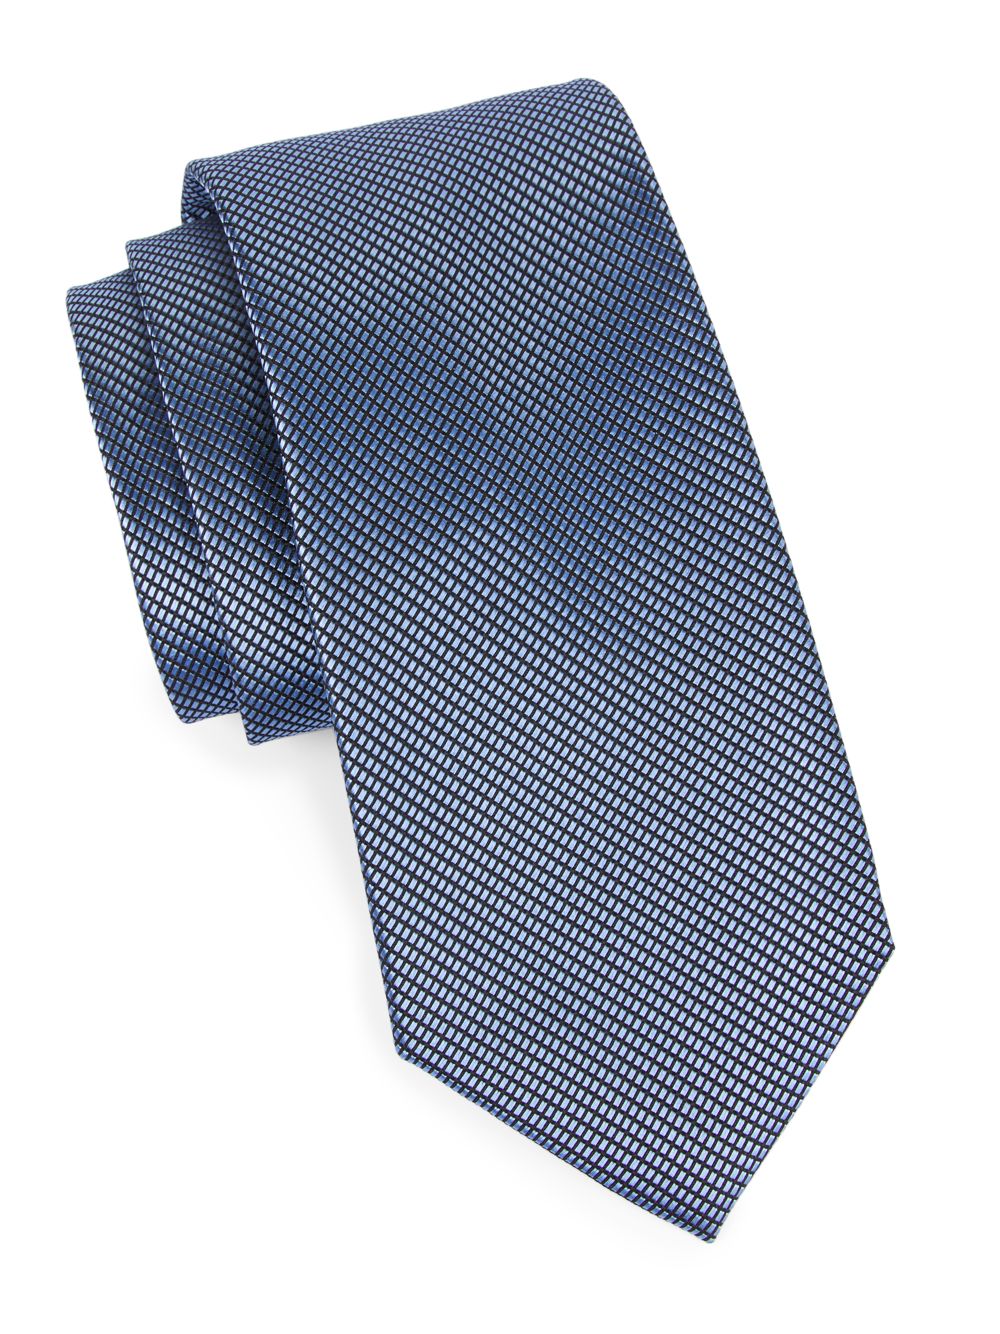 Фактурный шелковый галстук Isaia, синий